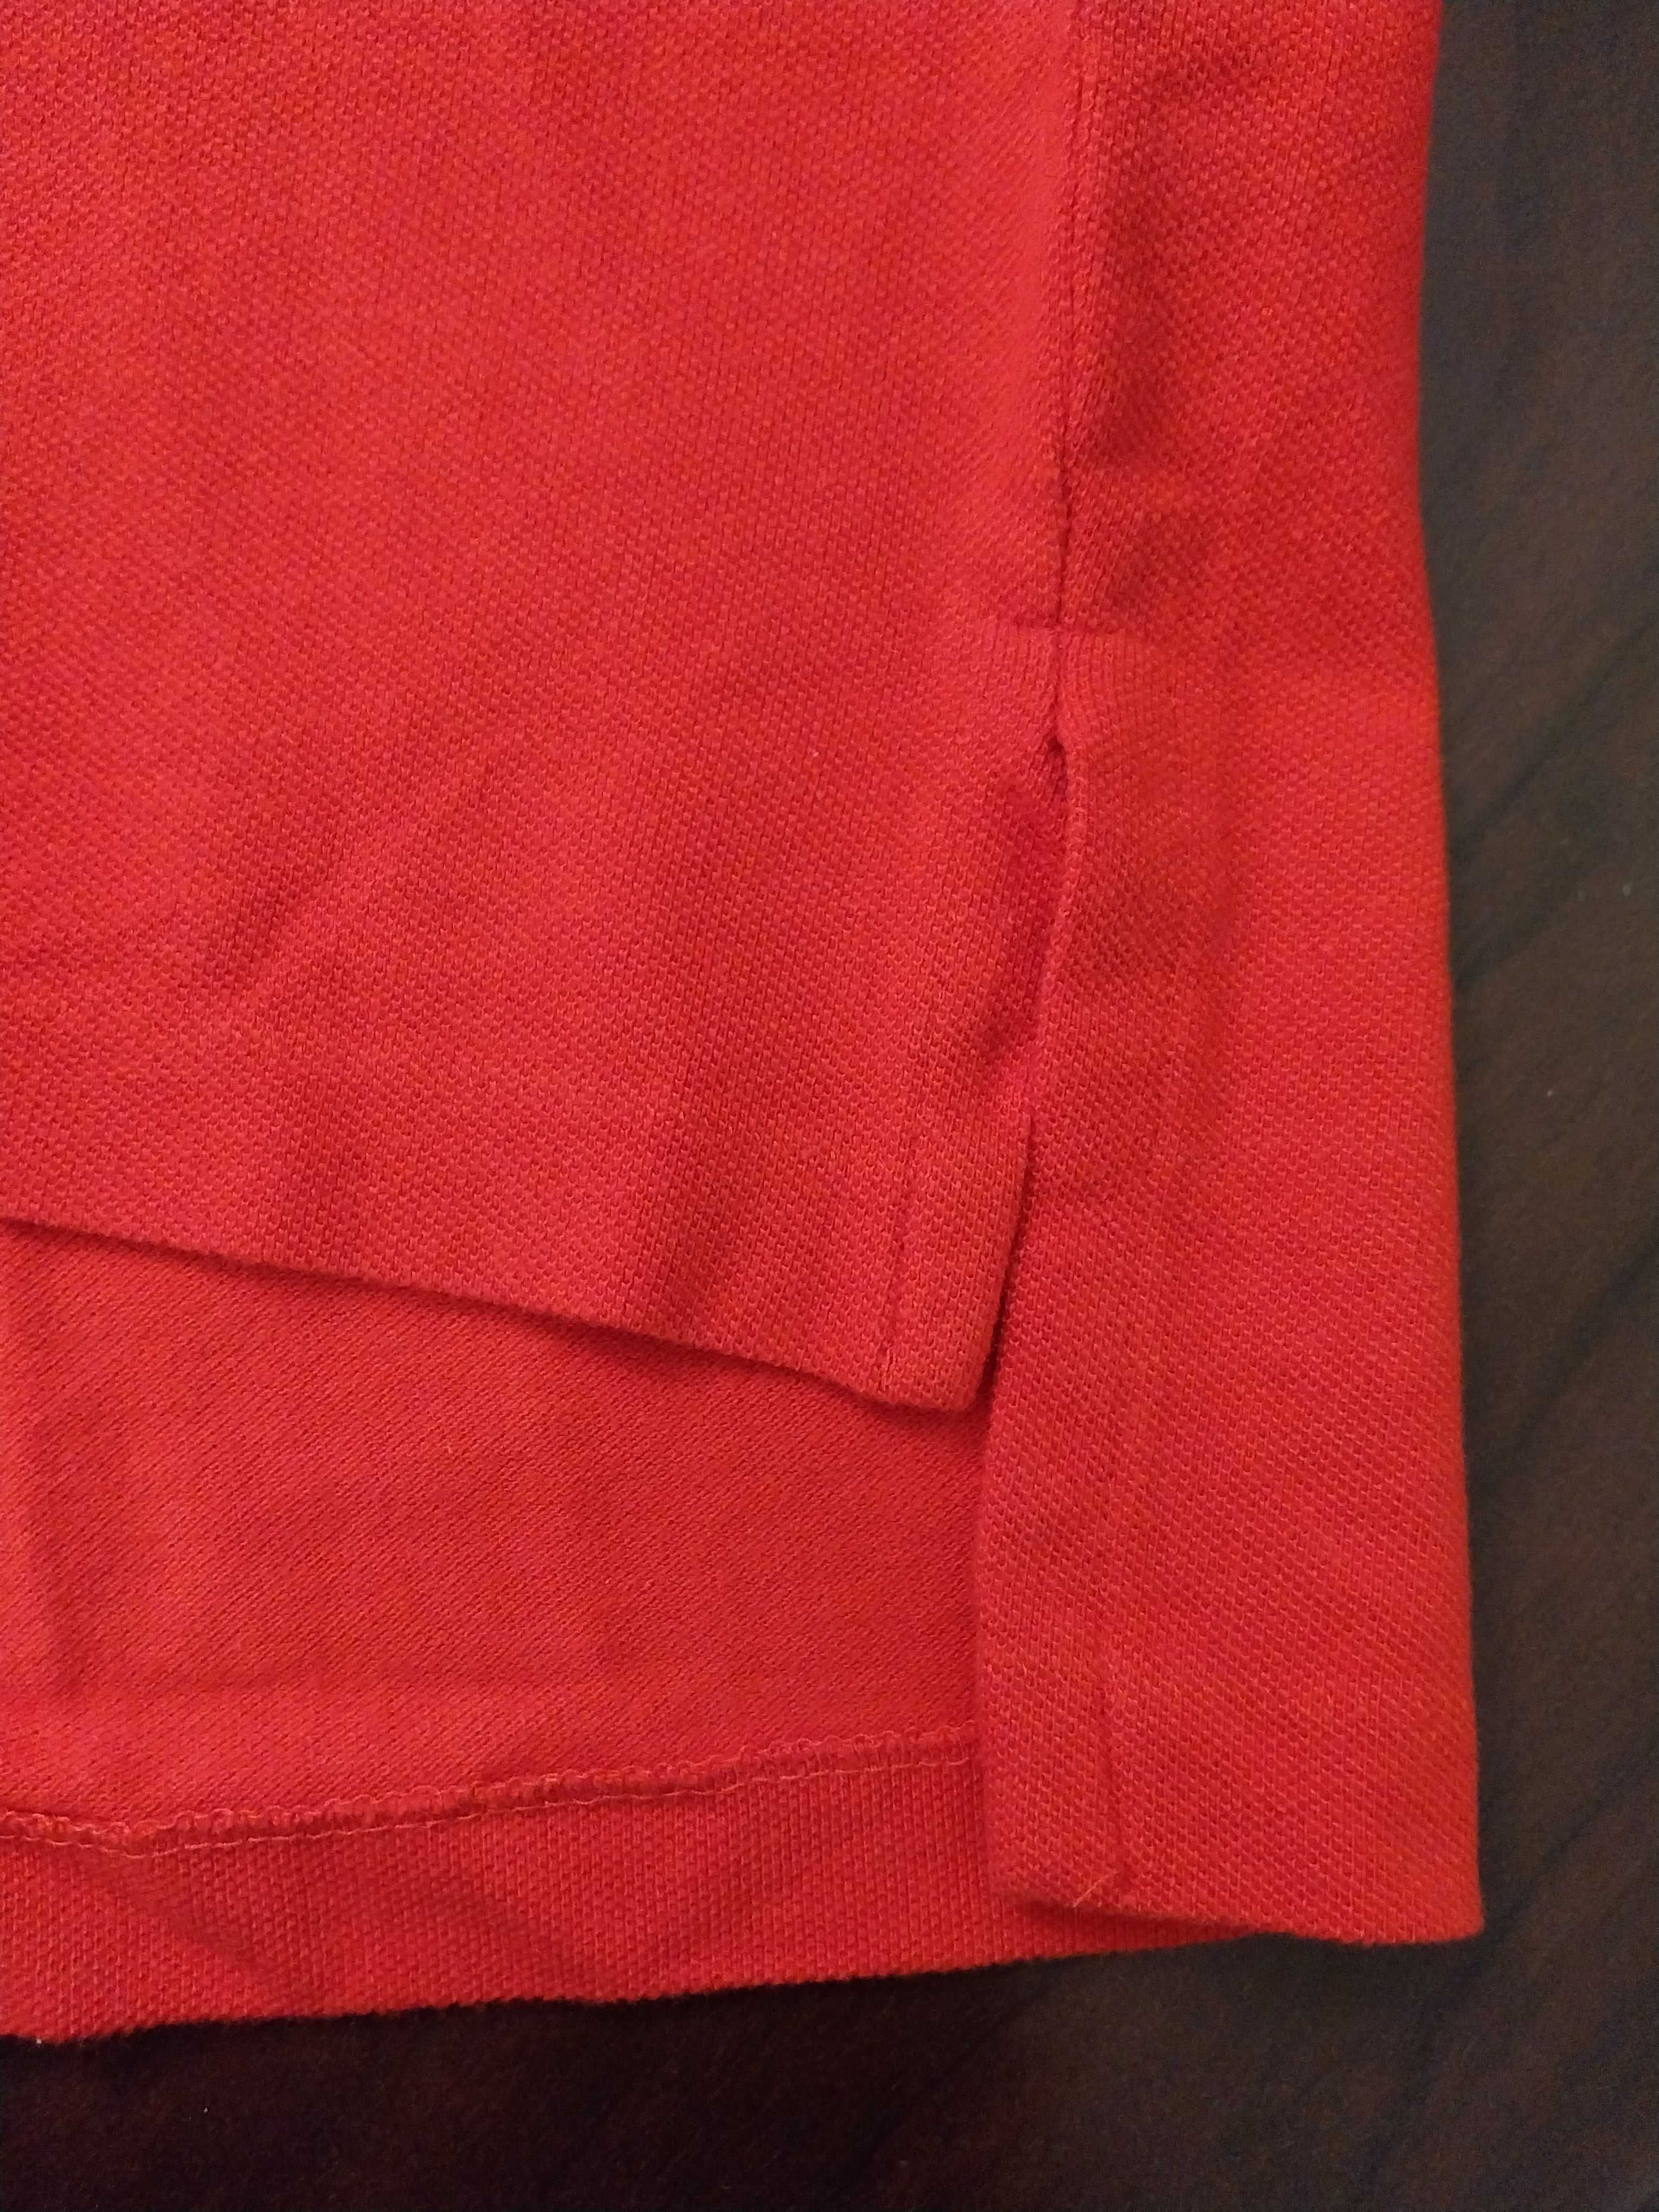 Polo vermelho, novo, oversize, tamanho L made in USA